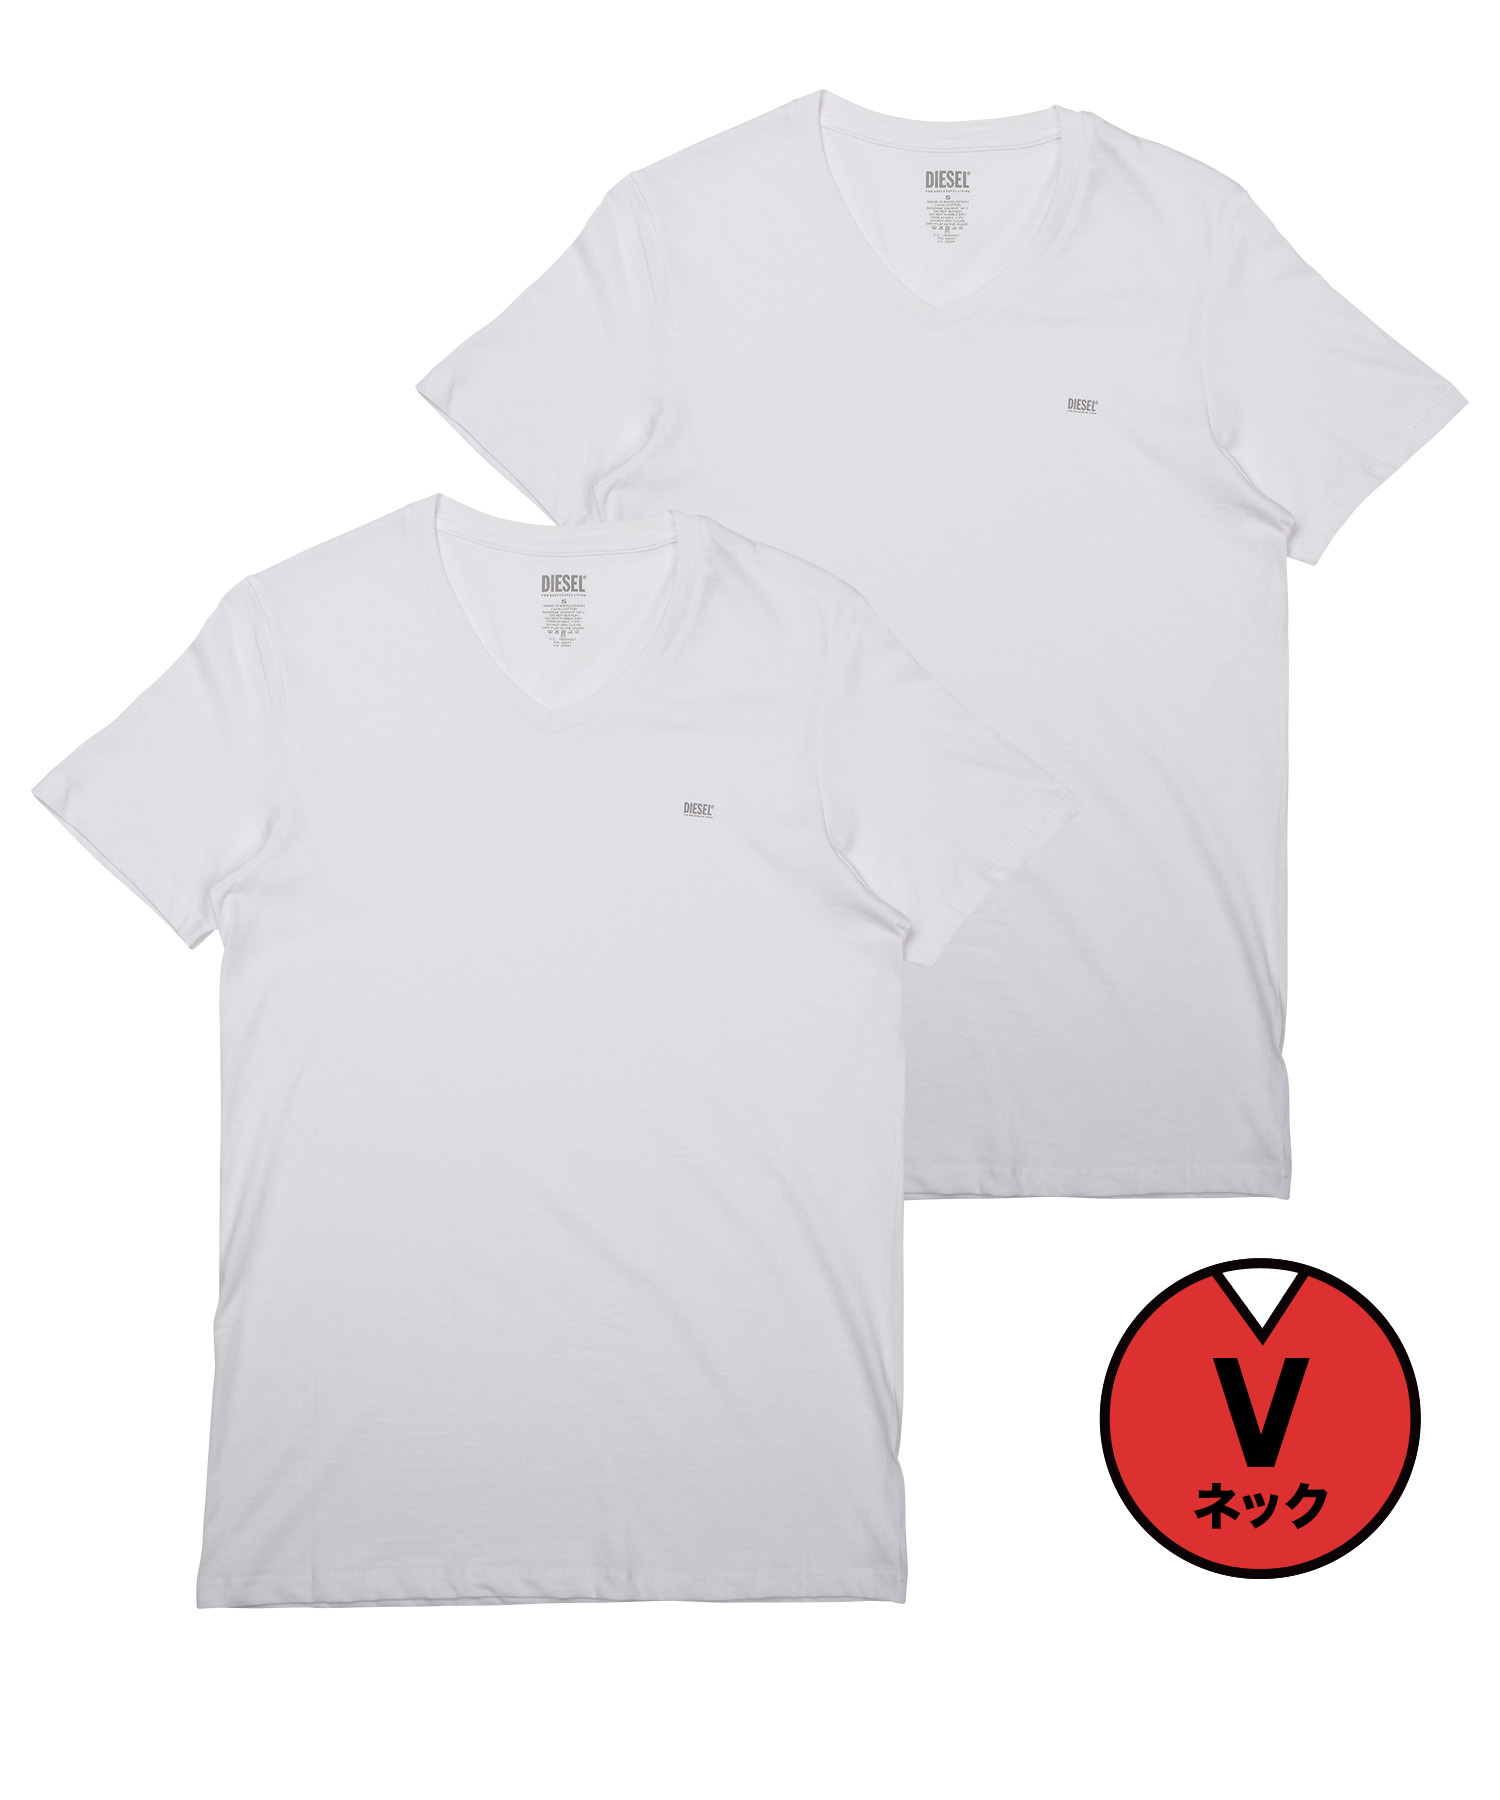 ディーゼル DIESEL Tシャツ 2枚セット メンズ 半袖 Vネック コットン100% 綿 レディース ユニセックス ブランド ロゴ プレゼント  ギフト